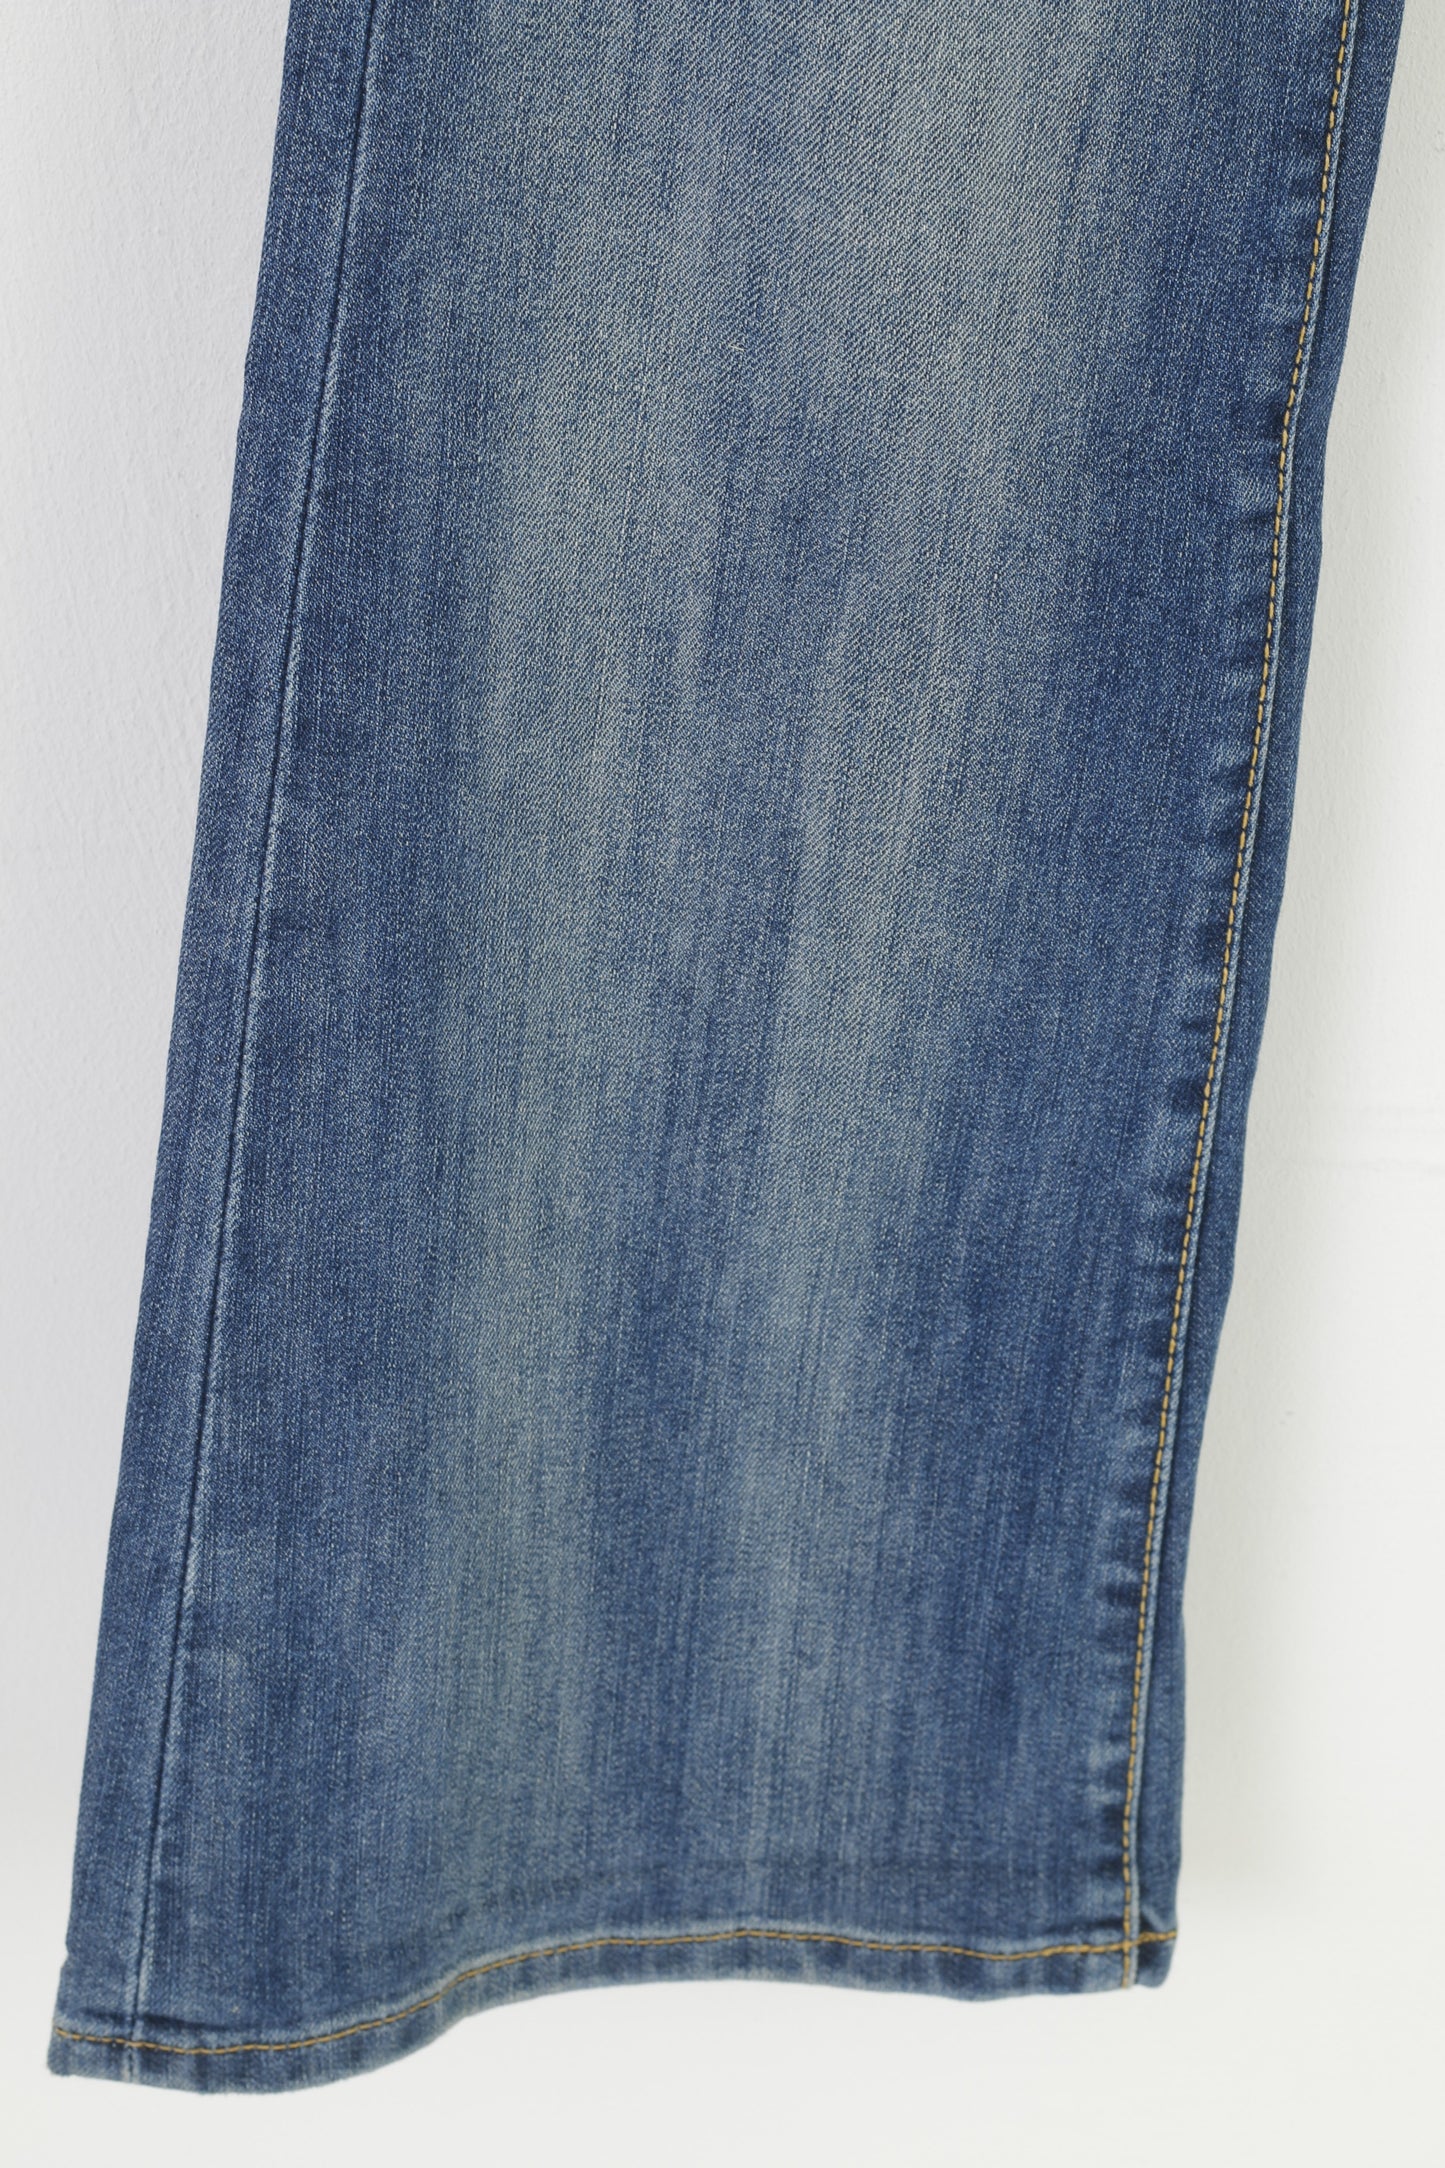 Tommy Hilfiger Women M Trousers Denim Jeans Blue Cotton Vintage Pants